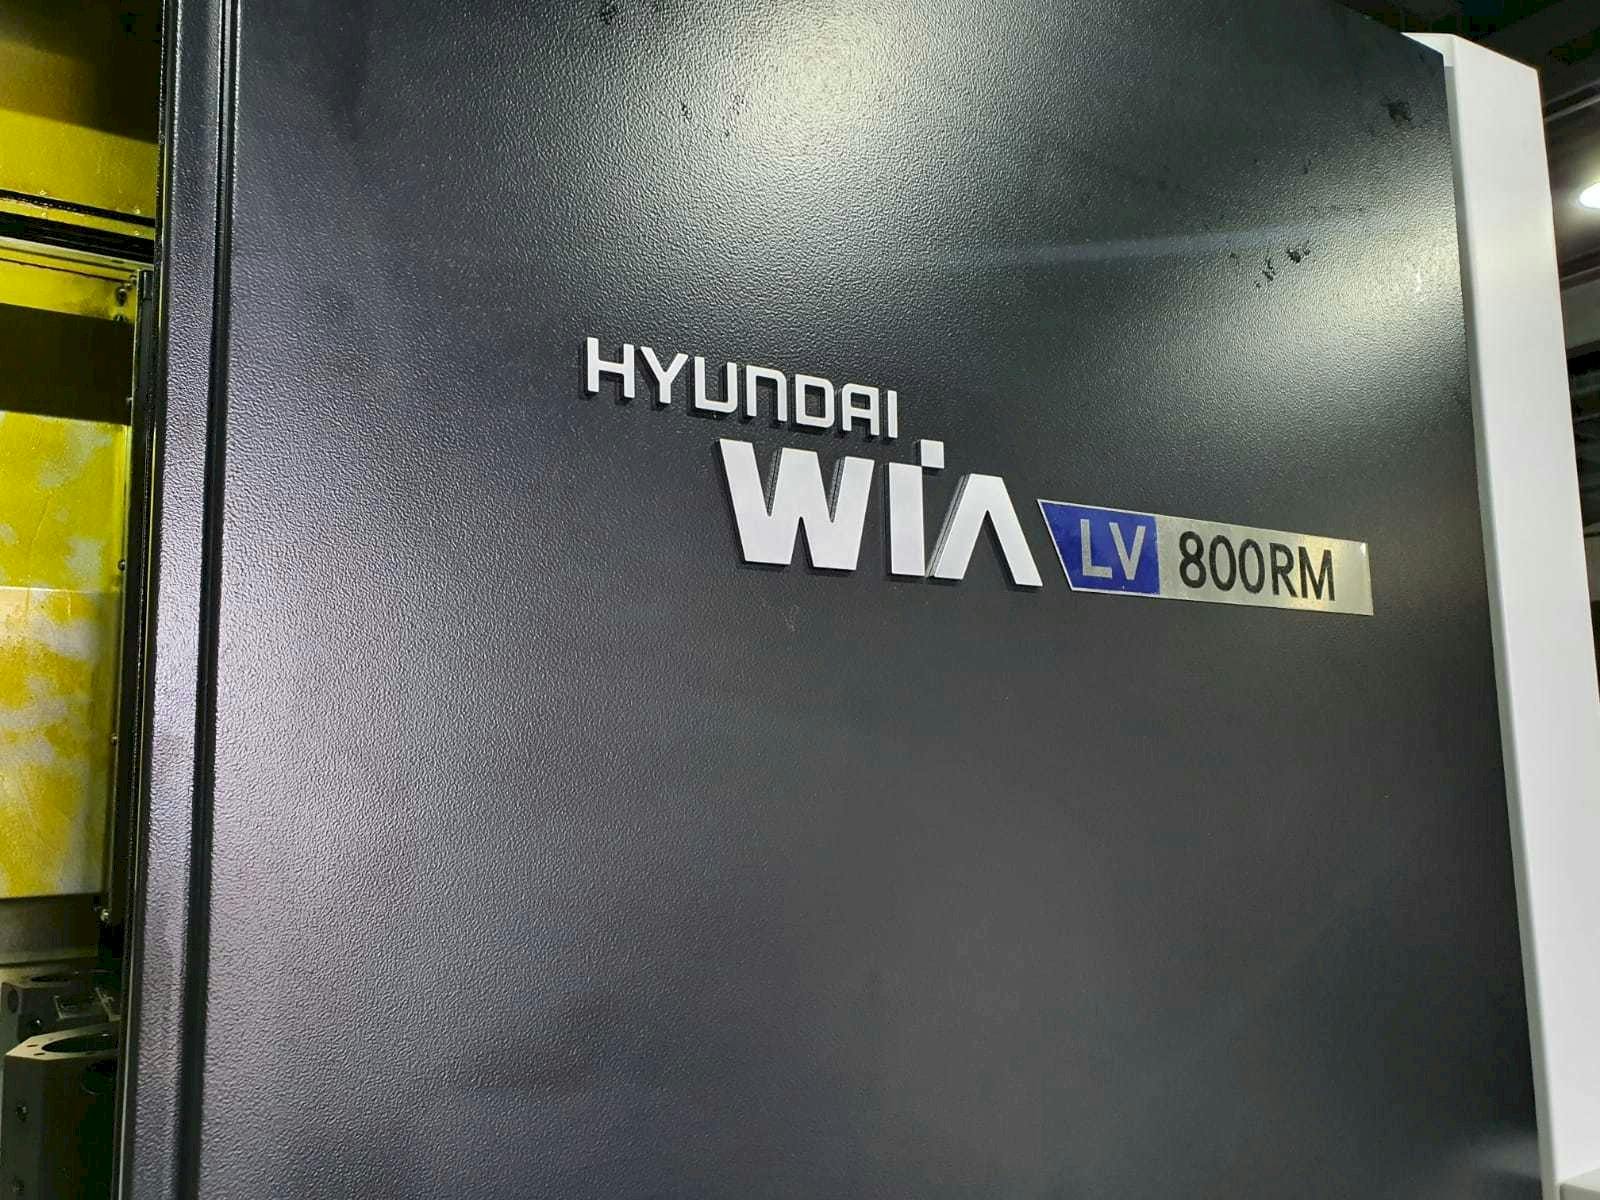 Widok z przodu maszyny Hyundai Wia LV800RM